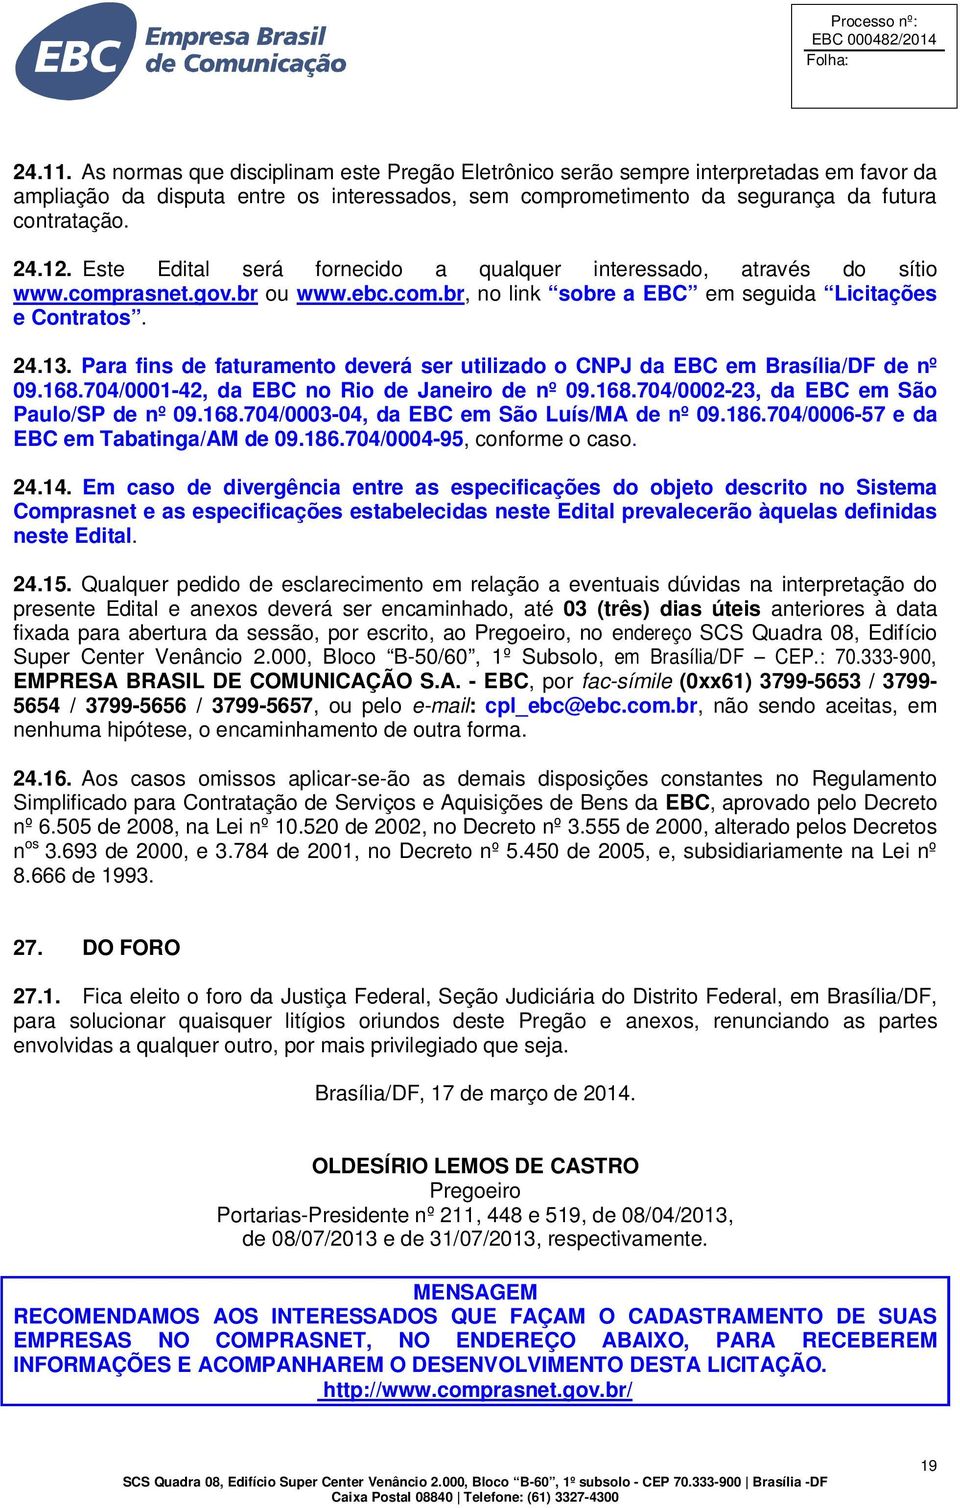 Para fins de faturamento deverá ser utilizado o CNPJ da EBC em Brasília/DF de nº 09.168.704/0001-42, da EBC no Rio de Janeiro de nº 09.168.704/0002-23, da EBC em São Paulo/SP de nº 09.168.704/0003-04, da EBC em São Luís/MA de nº 09.